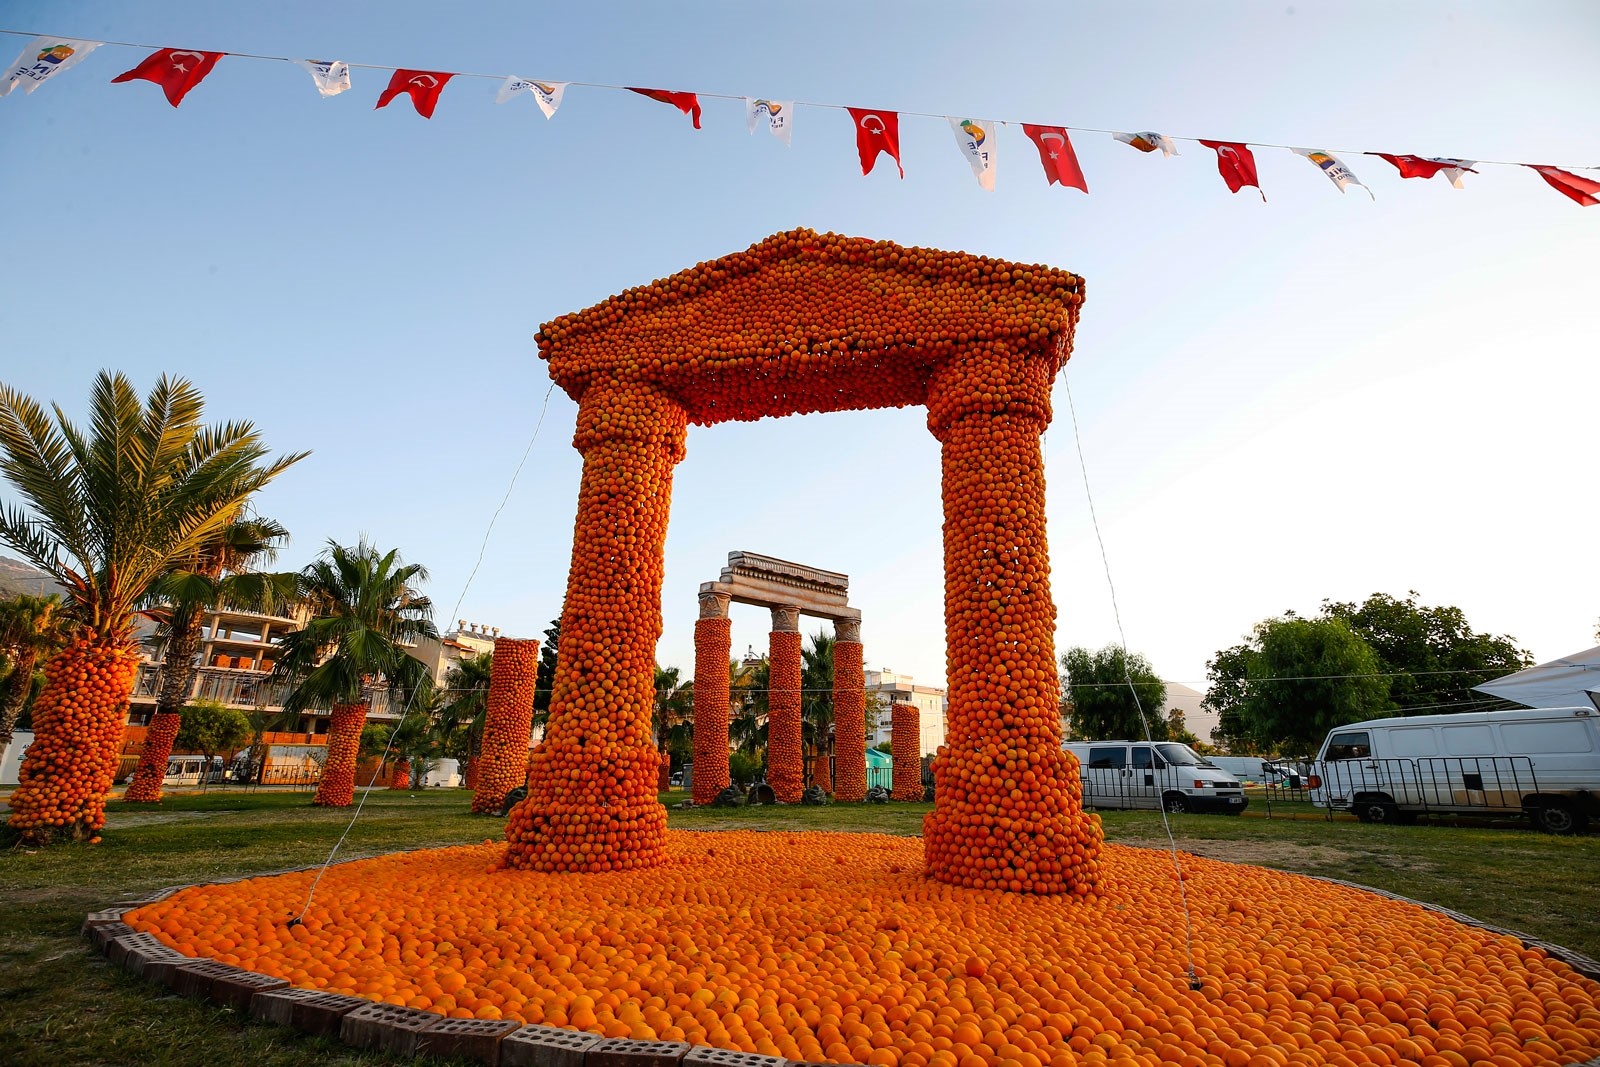 Скульптуры из апельсинов украсили город в турецкой Анталье